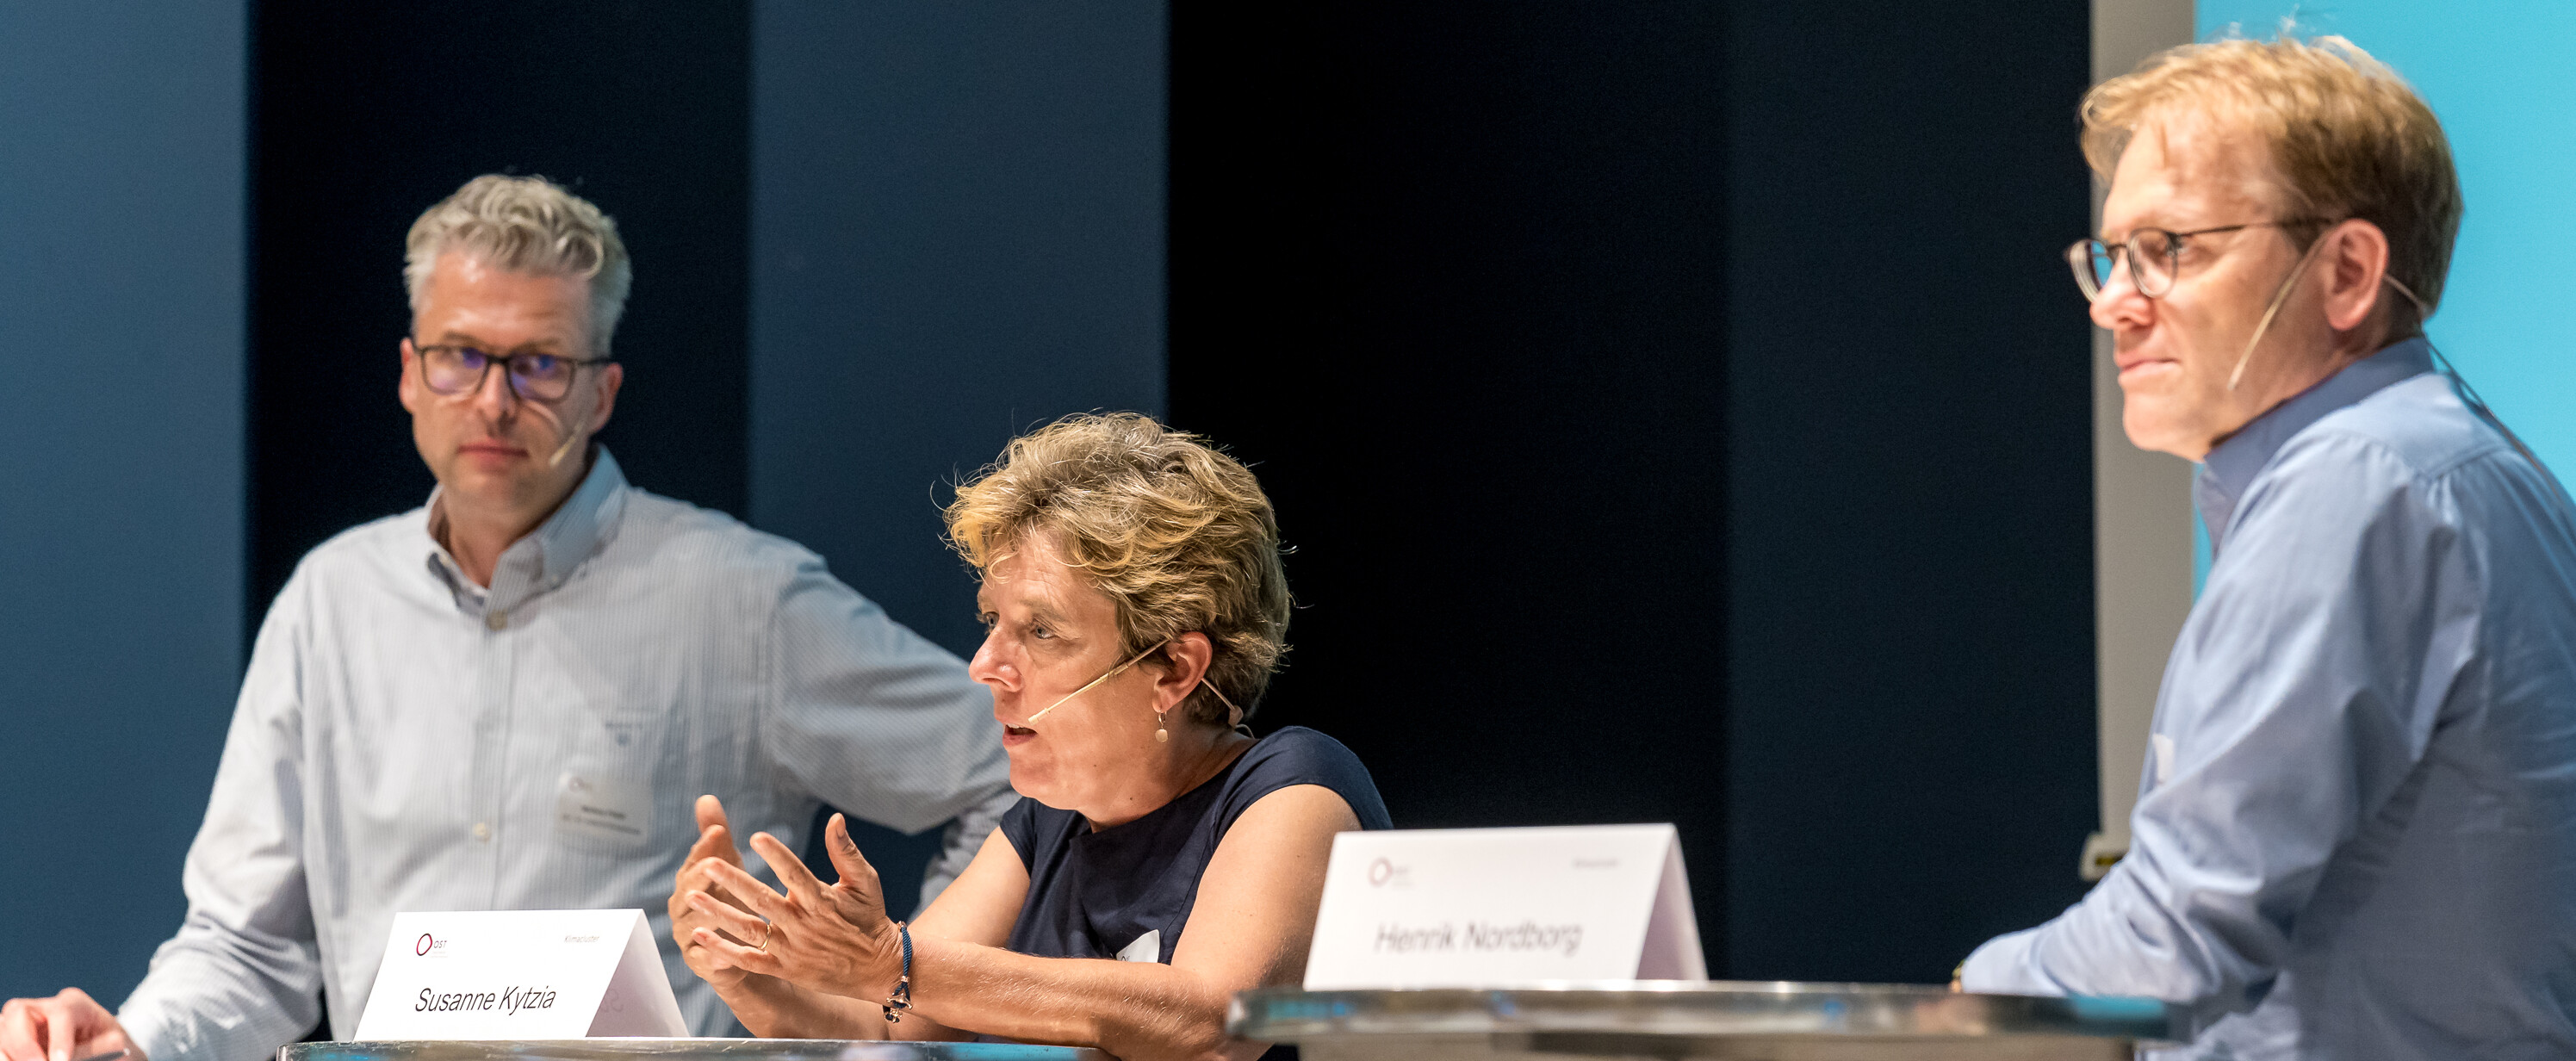 Klimakonferenz 2020: Susanne Kytzia (Mitte) in der Podiumsdiskussion